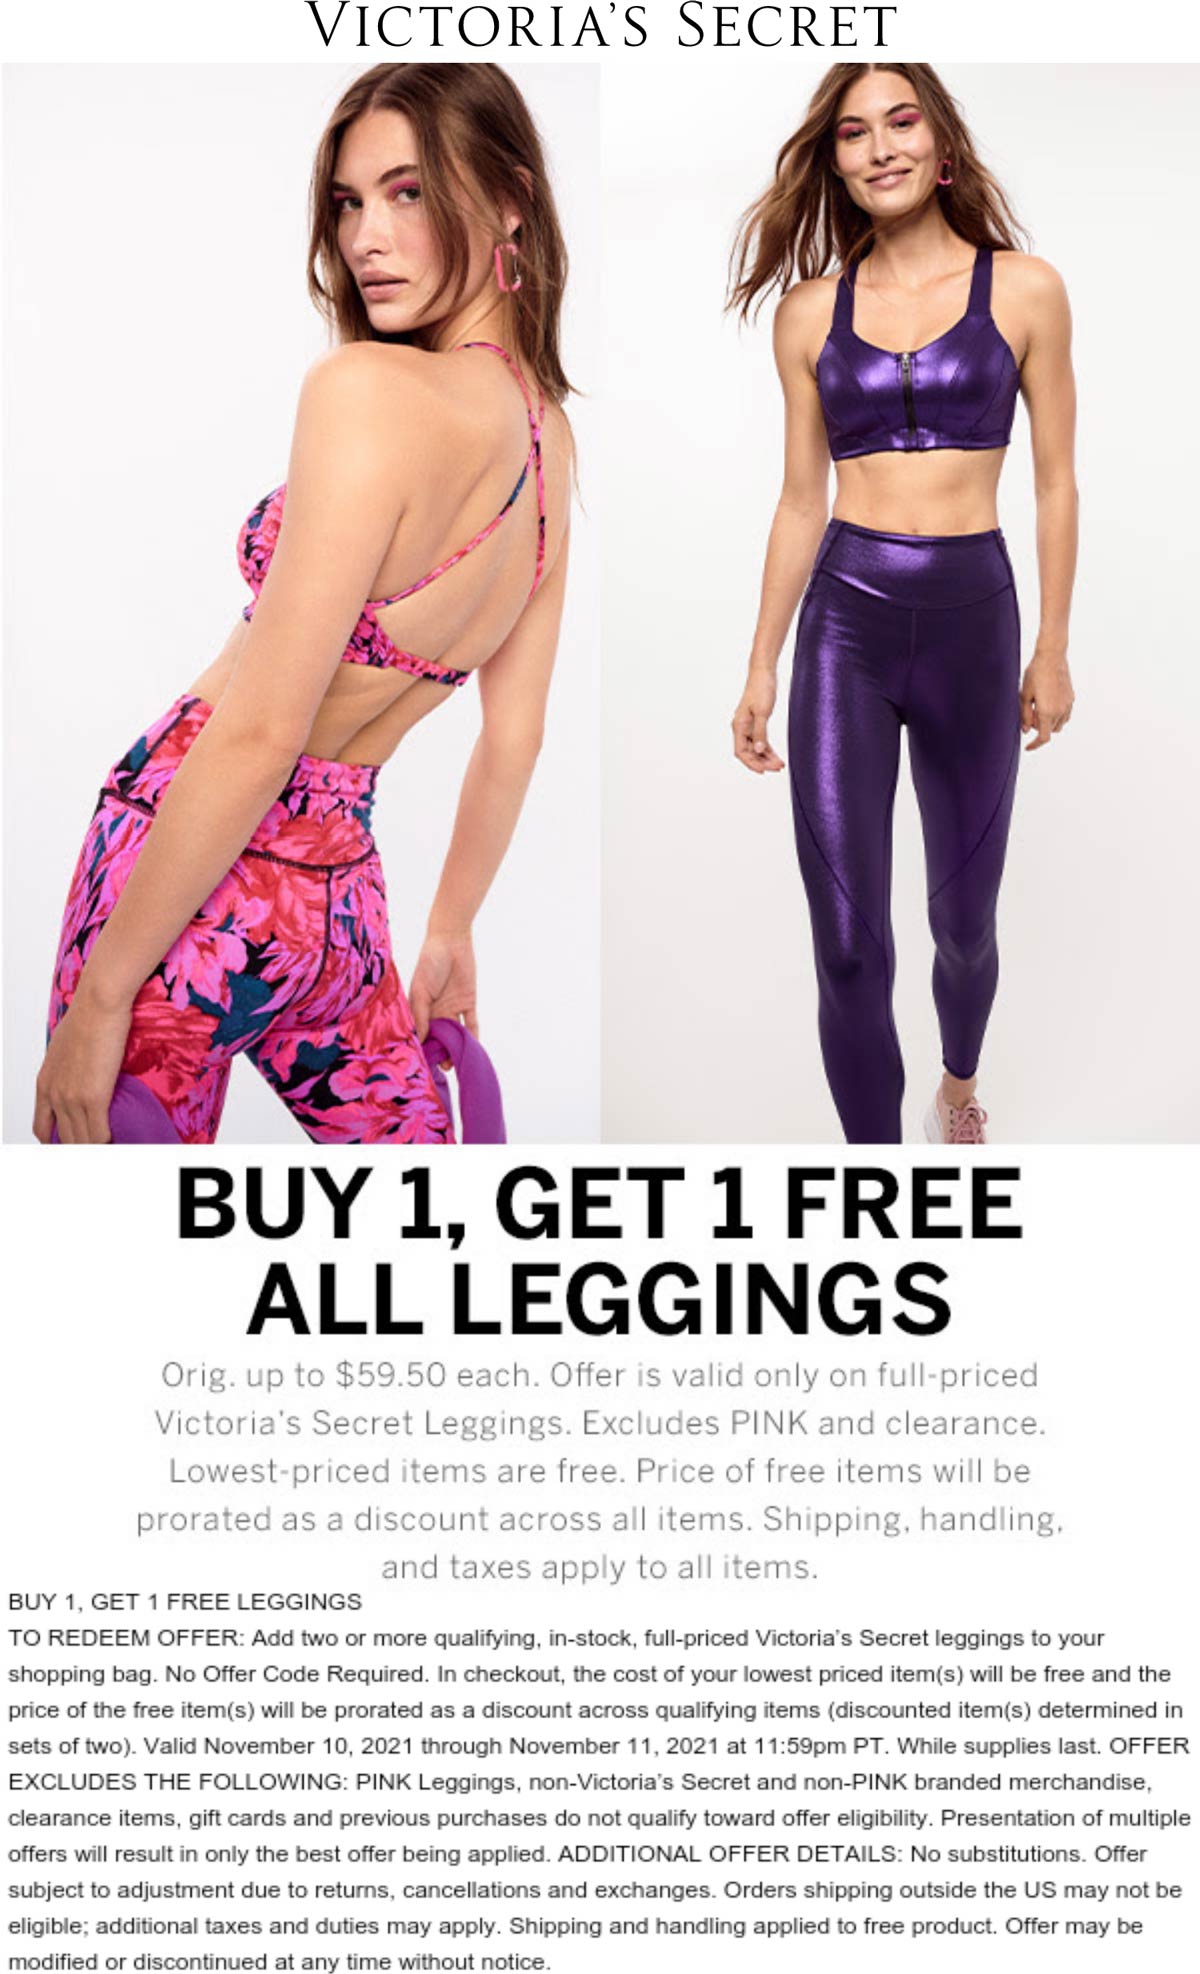 Victorias Secret stores Coupon  Second leggings free today at Victorias Secret #victoriassecret 